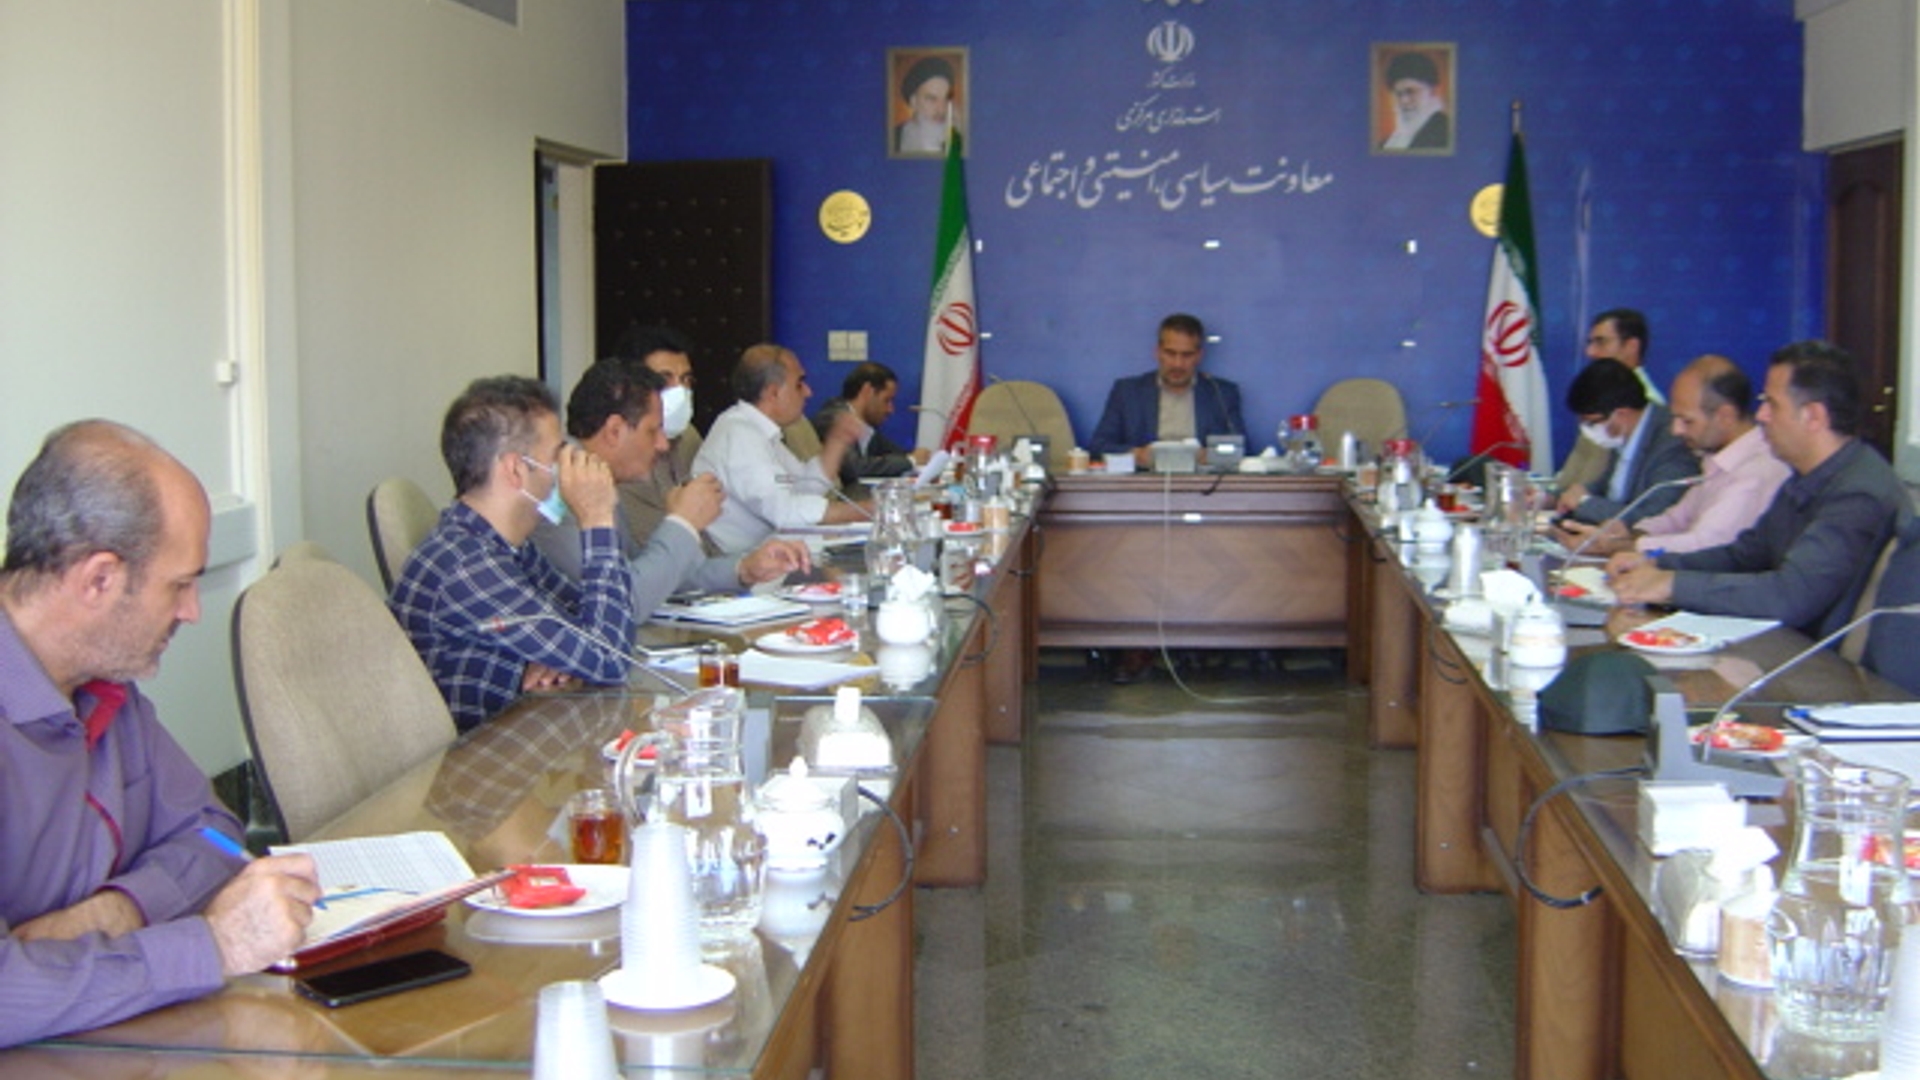 جلسه حفاظت از آزمون استان به ریاست جناب آقای رحیمی تبار مدیر کل امنیتی و انتظامی برگزار گردید.